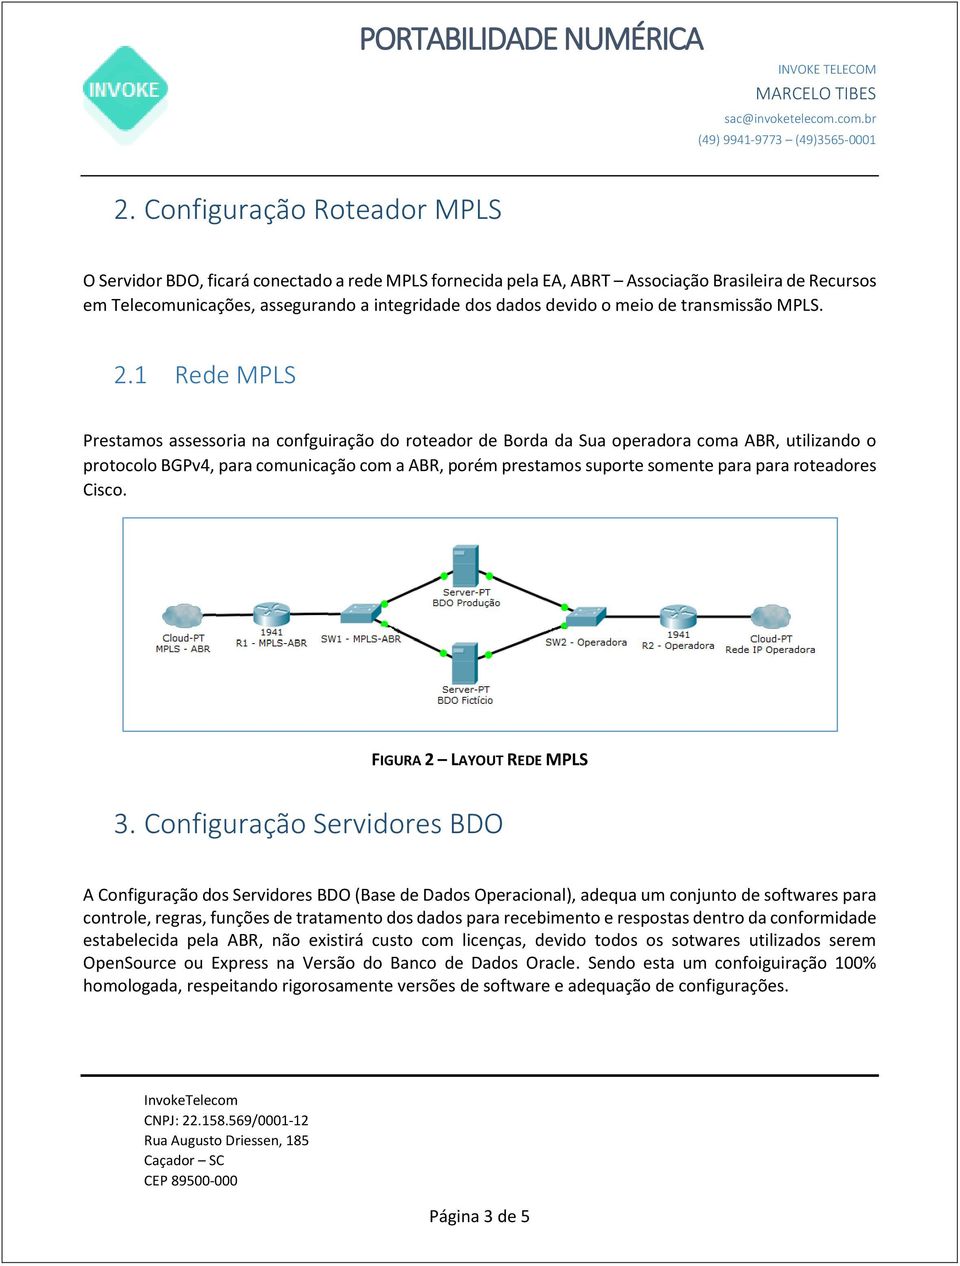 1 Rede MPLS Prestamos assessoria na confguiração do roteador de Borda da Sua operadora coma ABR, utilizando o protocolo BGPv4, para comunicação com a ABR, porém prestamos suporte somente para para